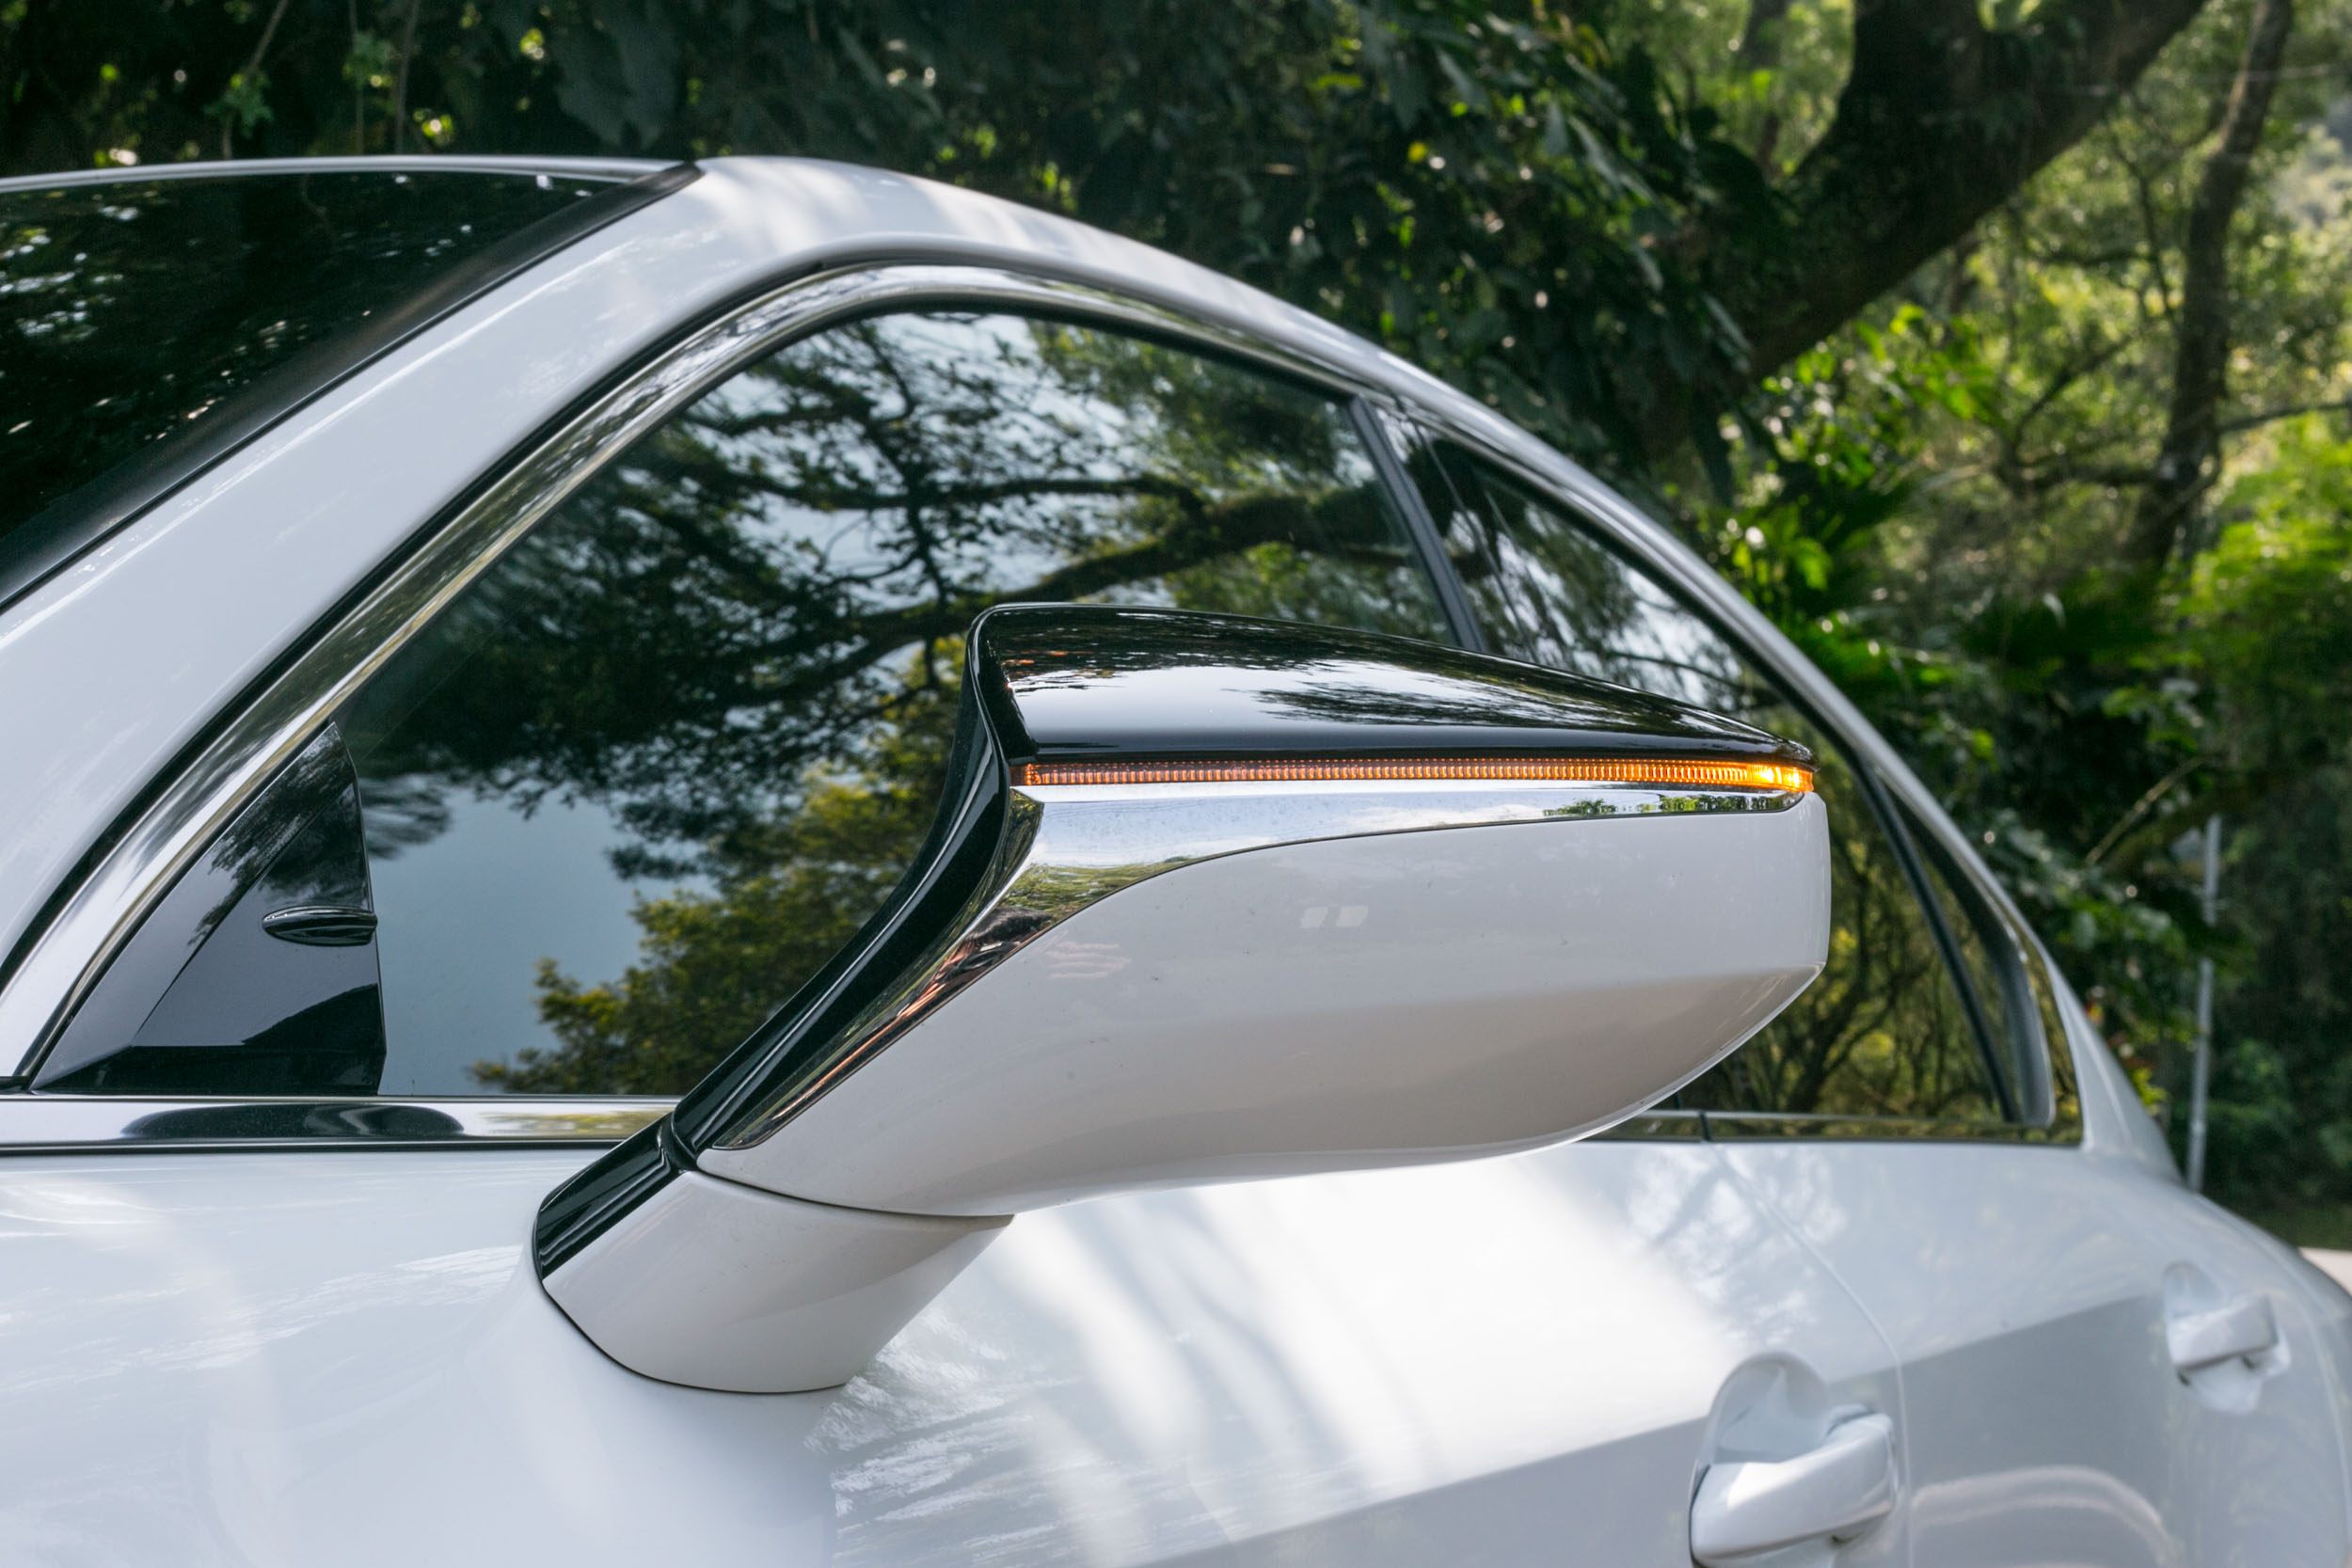 設置於前車門板上的後視鏡設計為 IS 車系特色。